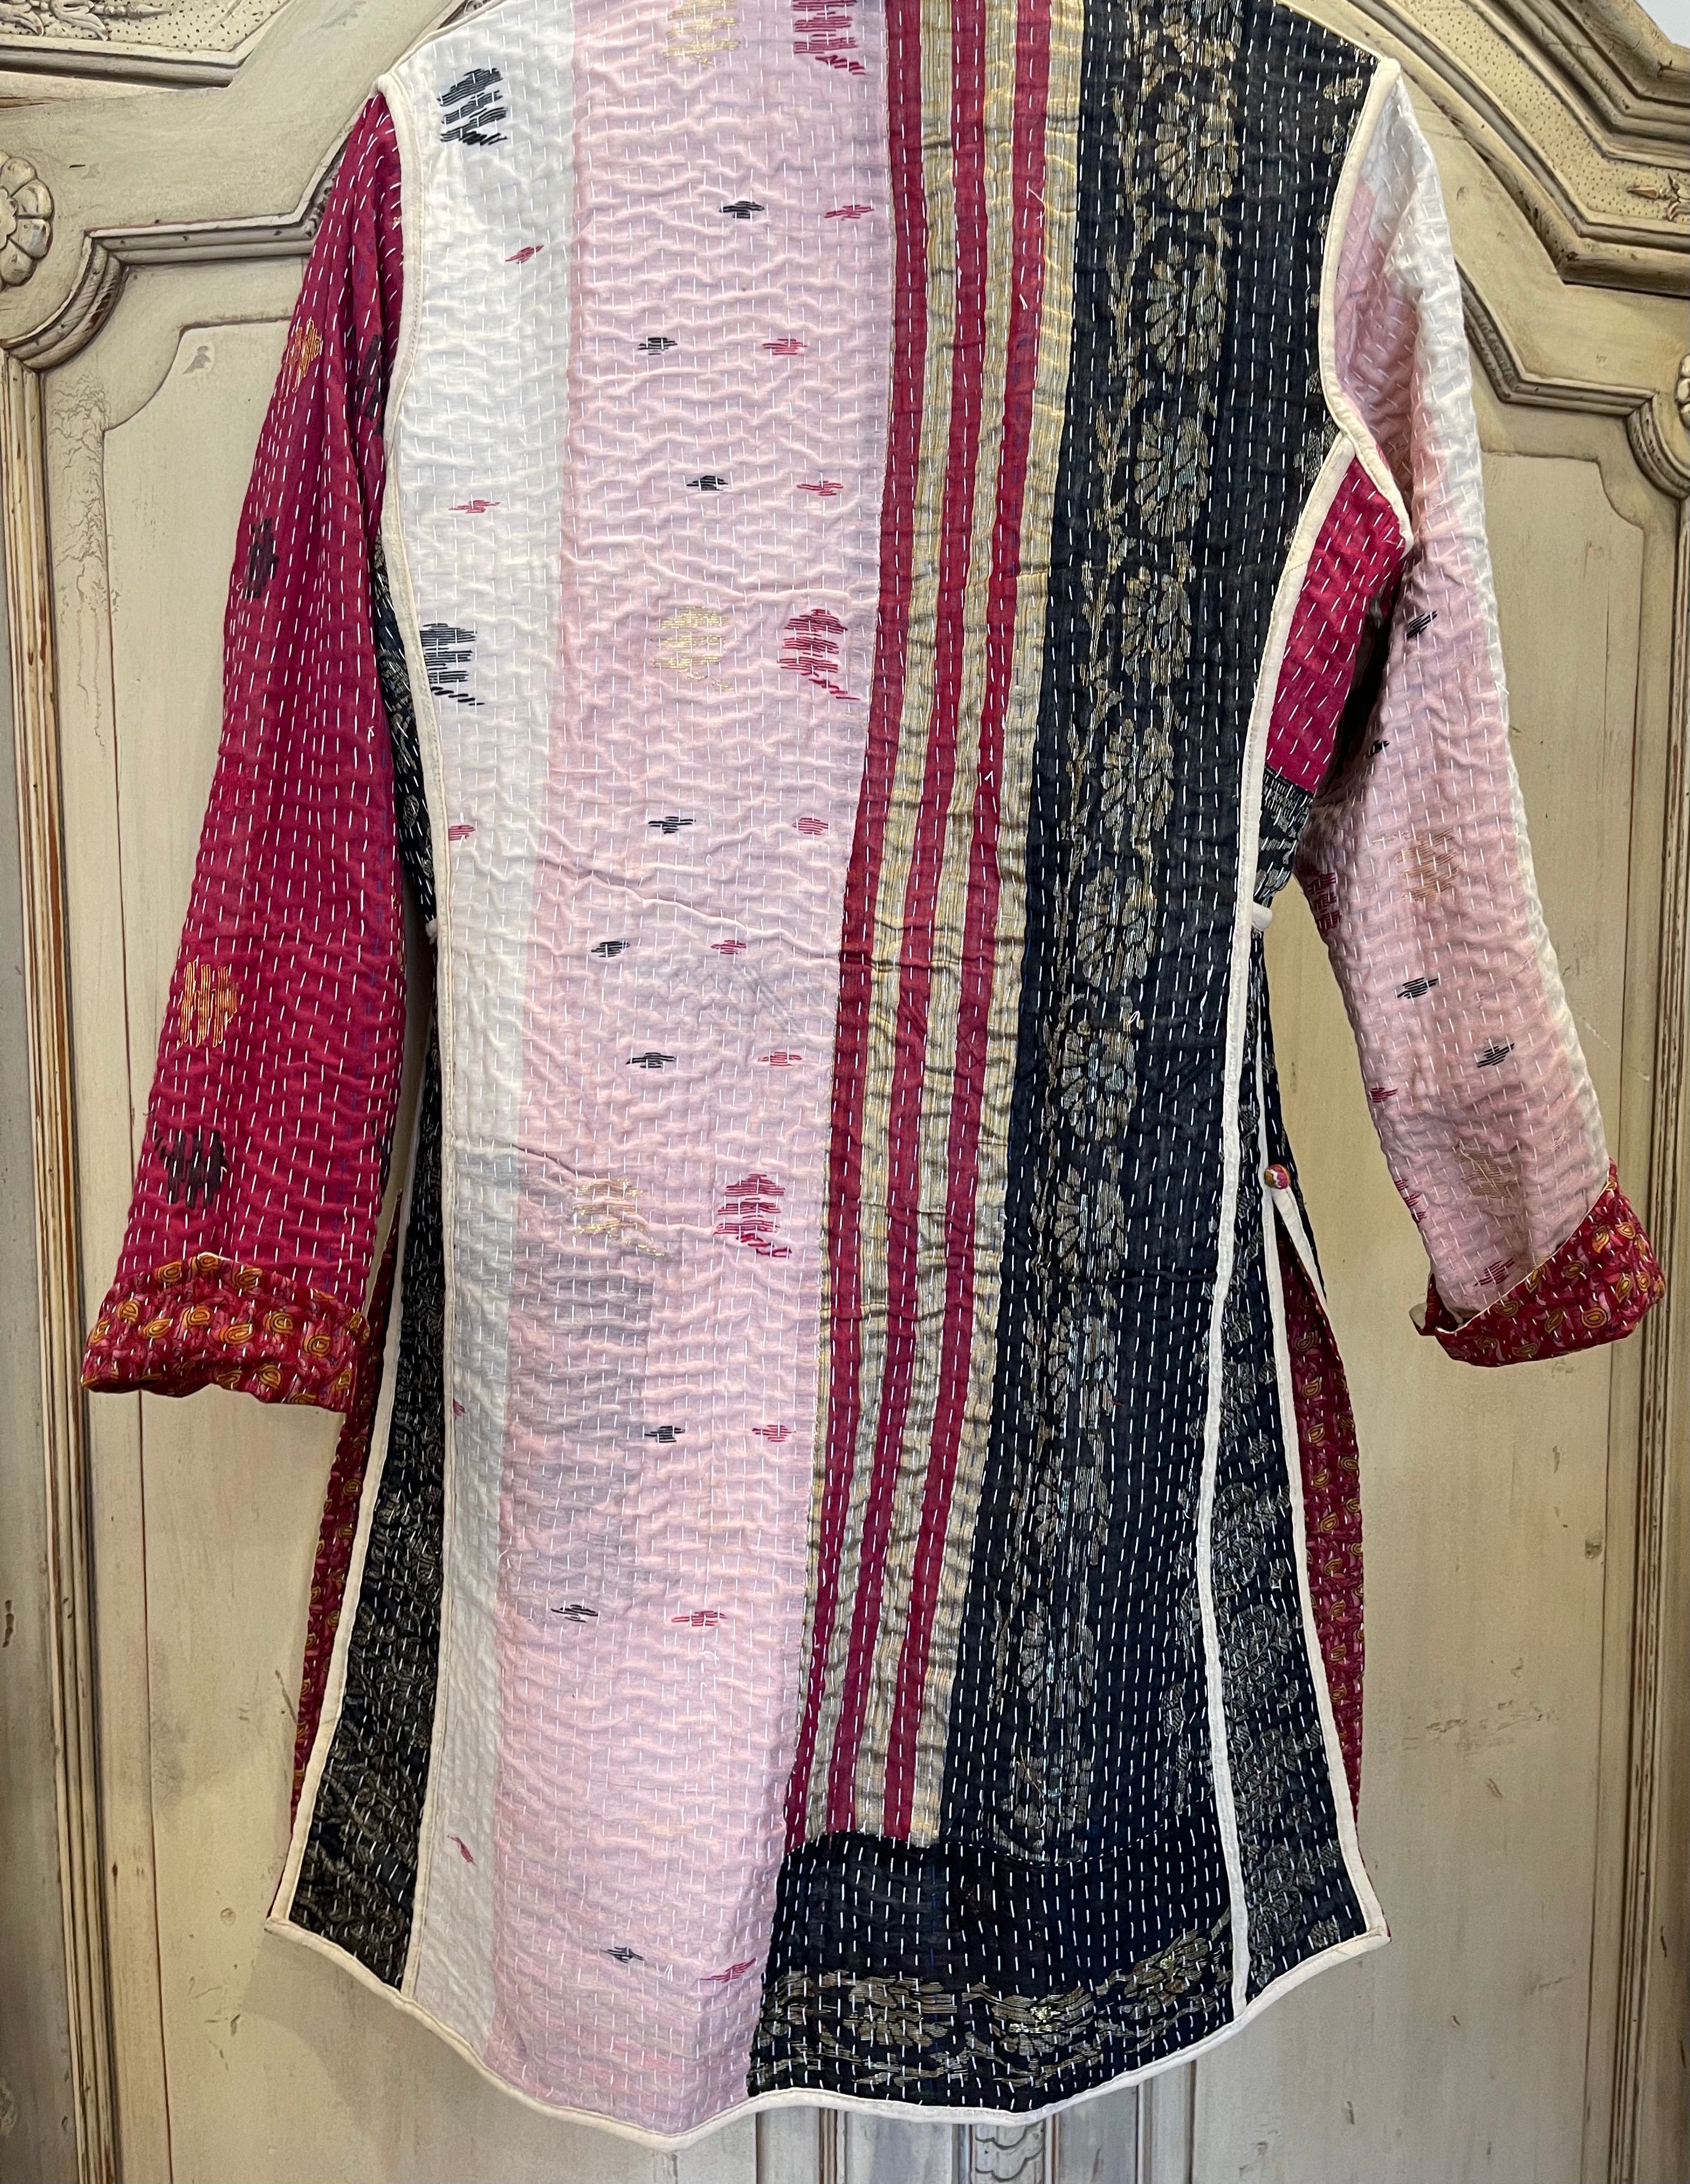 Vintage Kantha Jacket - Ruby Floral